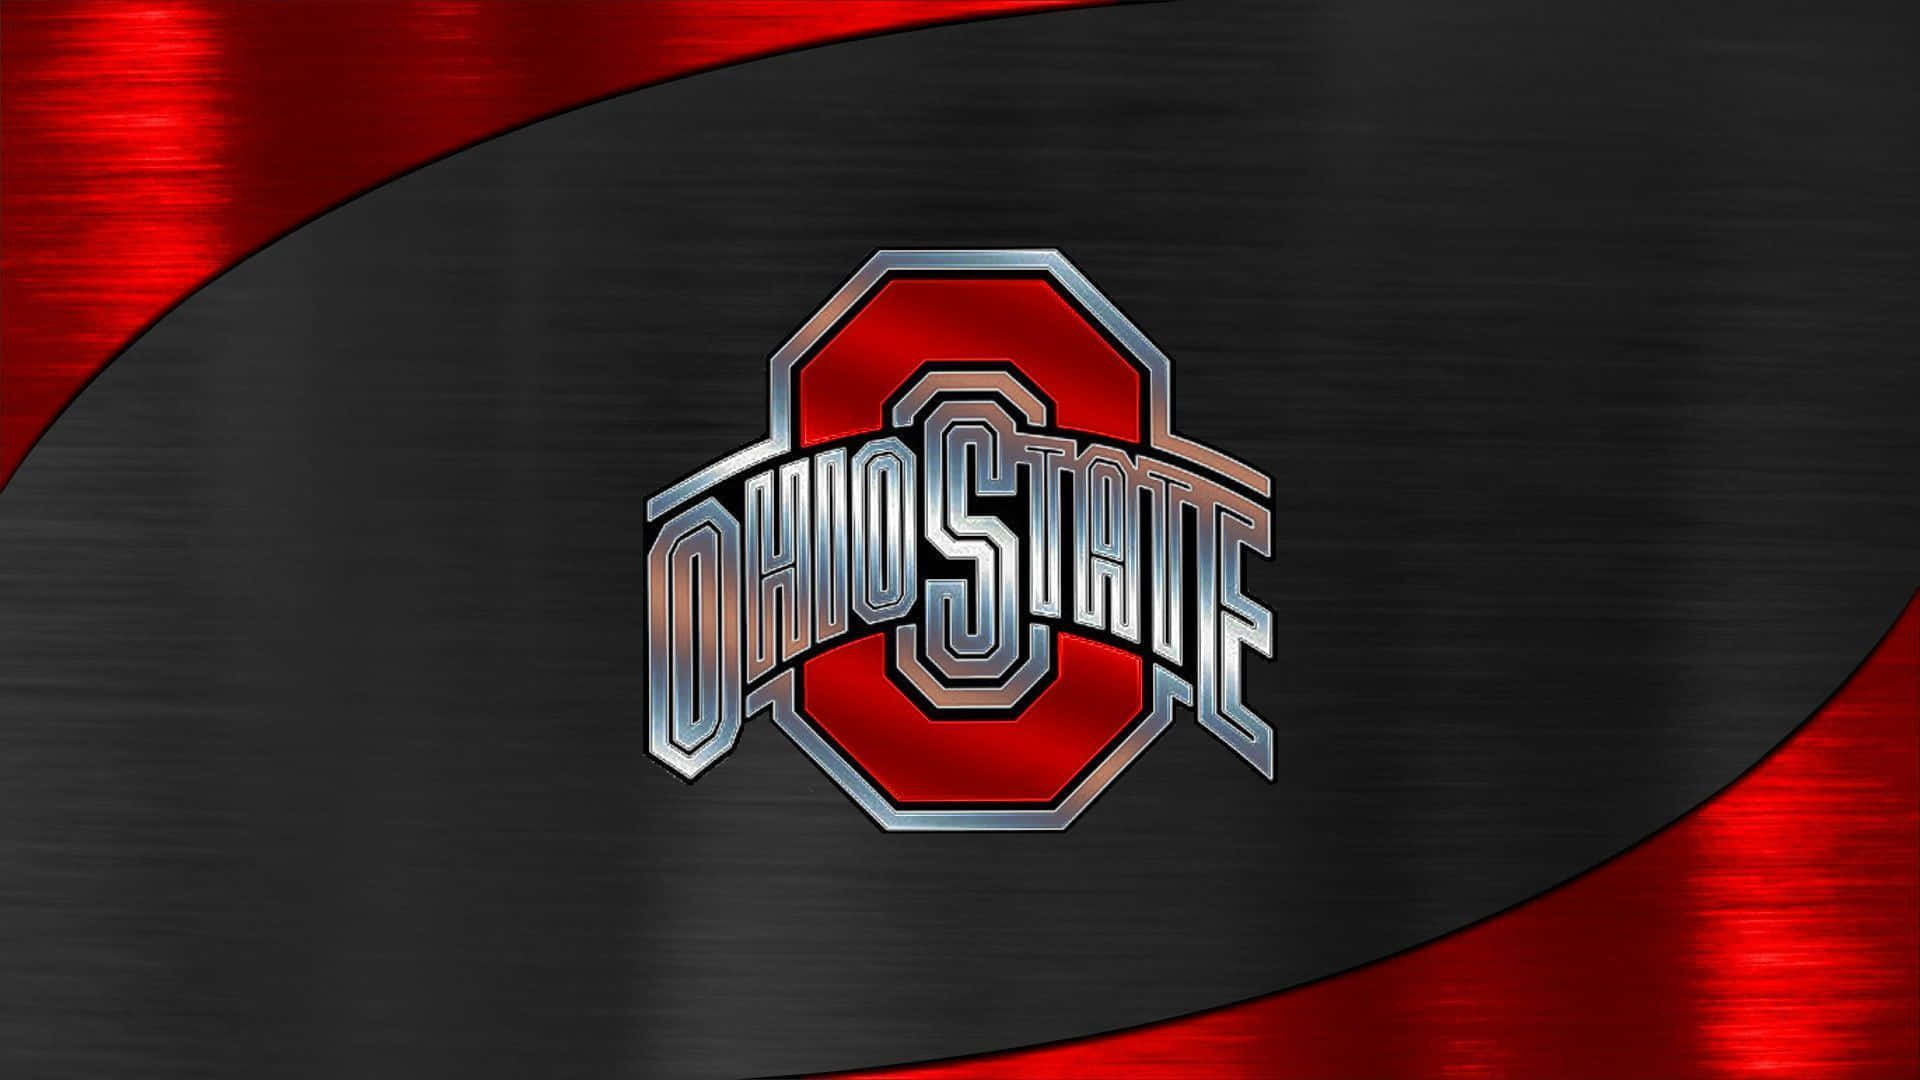 Logotipode La Universidad Estatal De Ohio En Rojo Y Plateado Fondo de pantalla